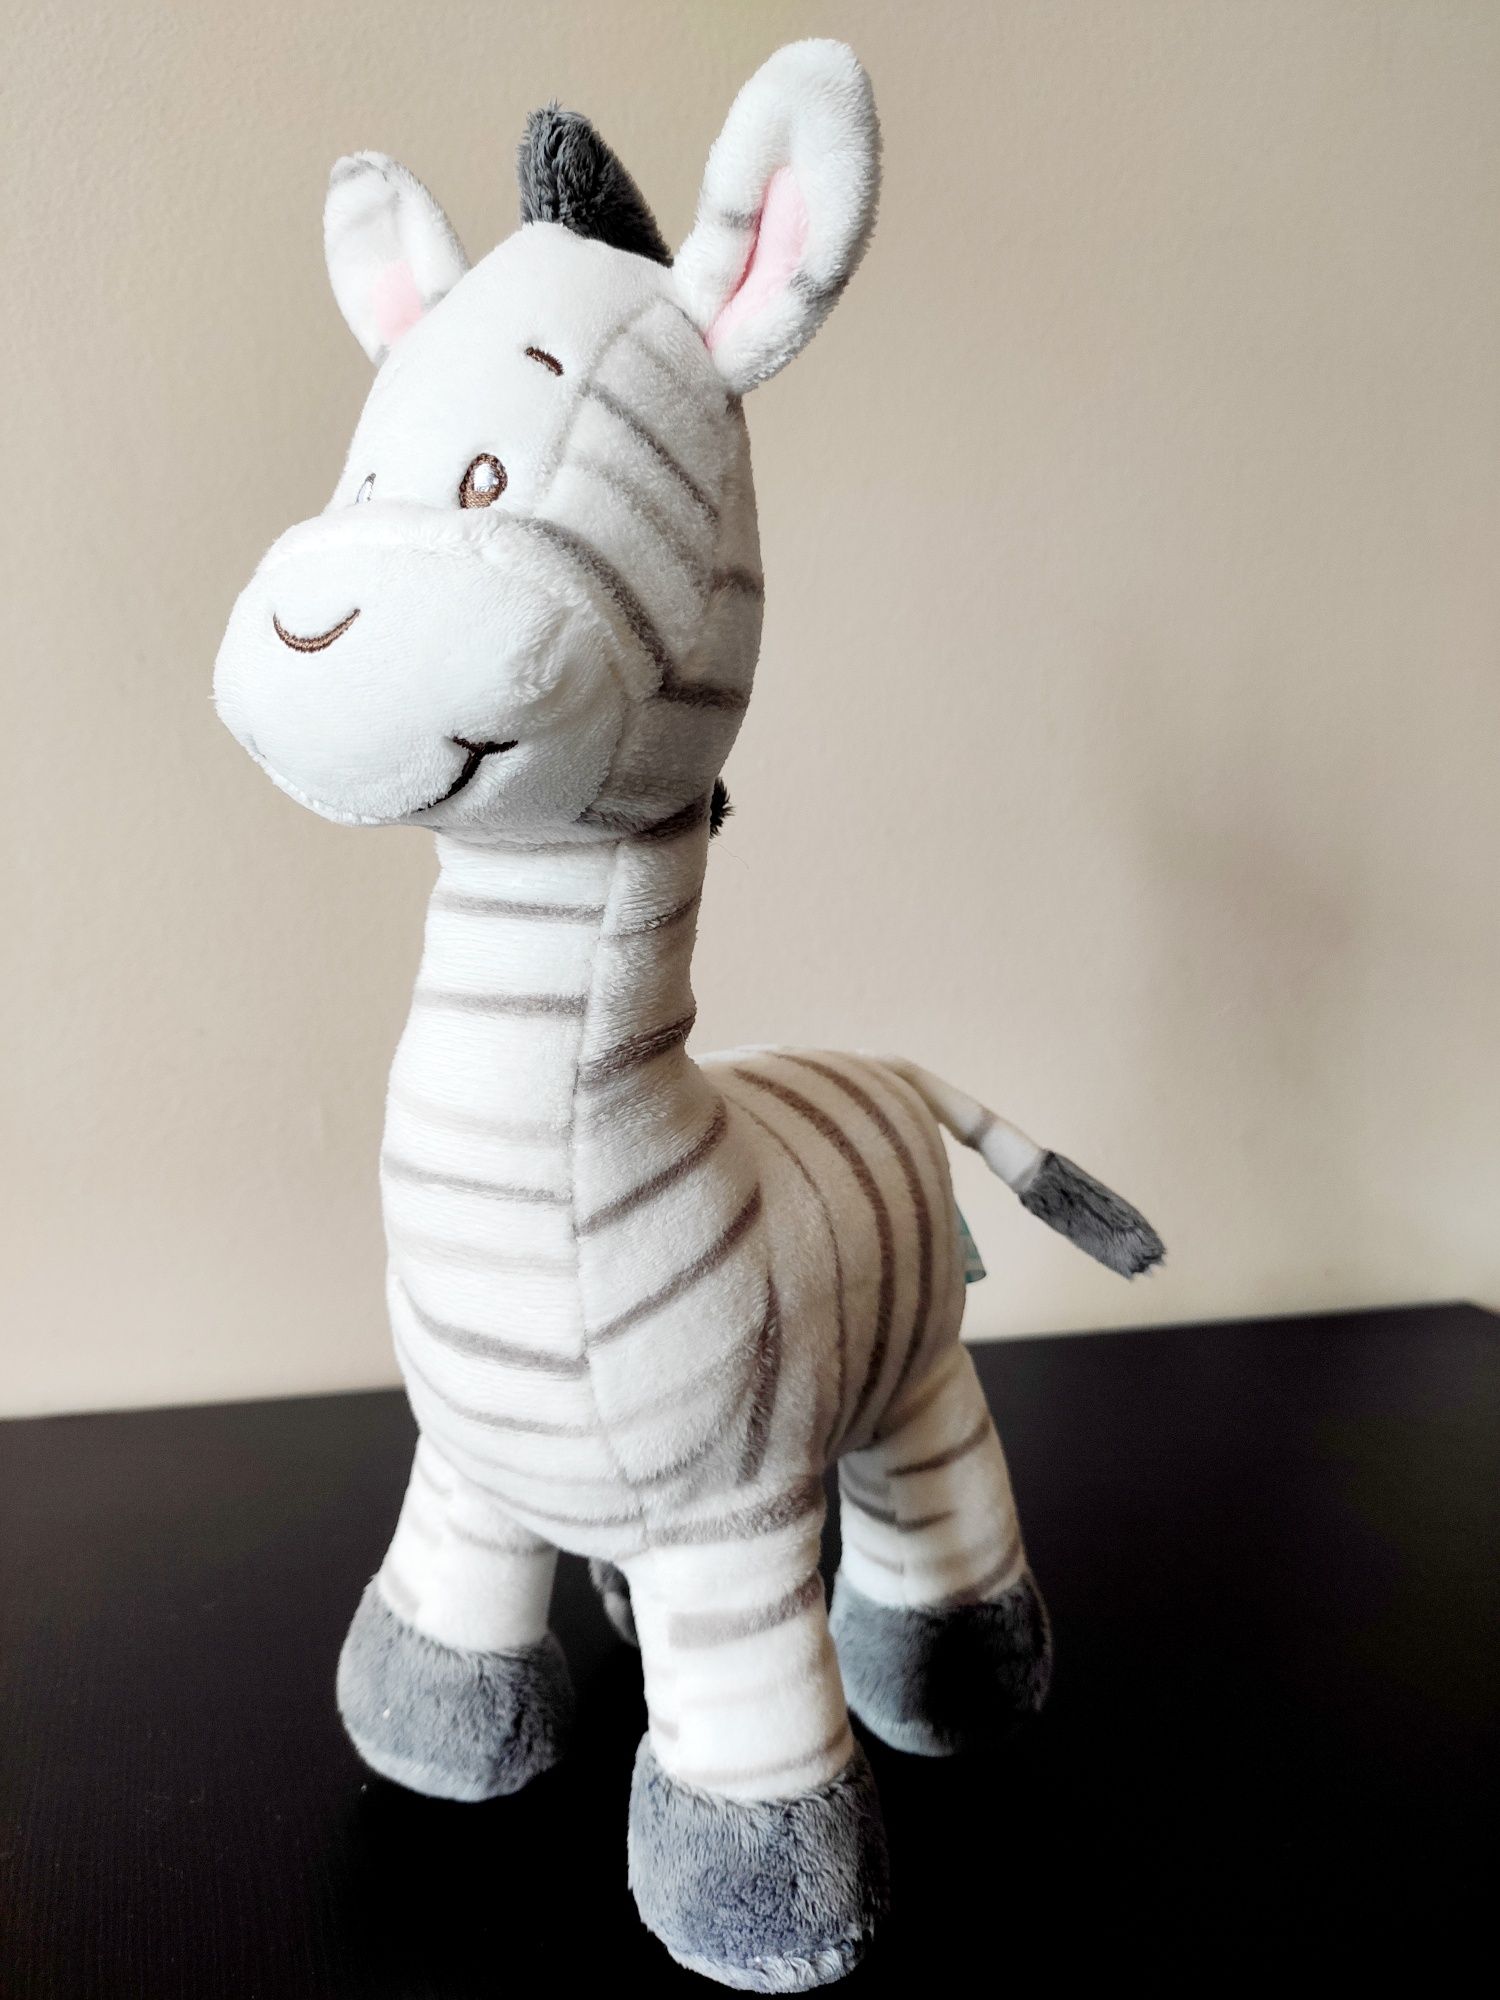 Pluszowa zabawka zebry.